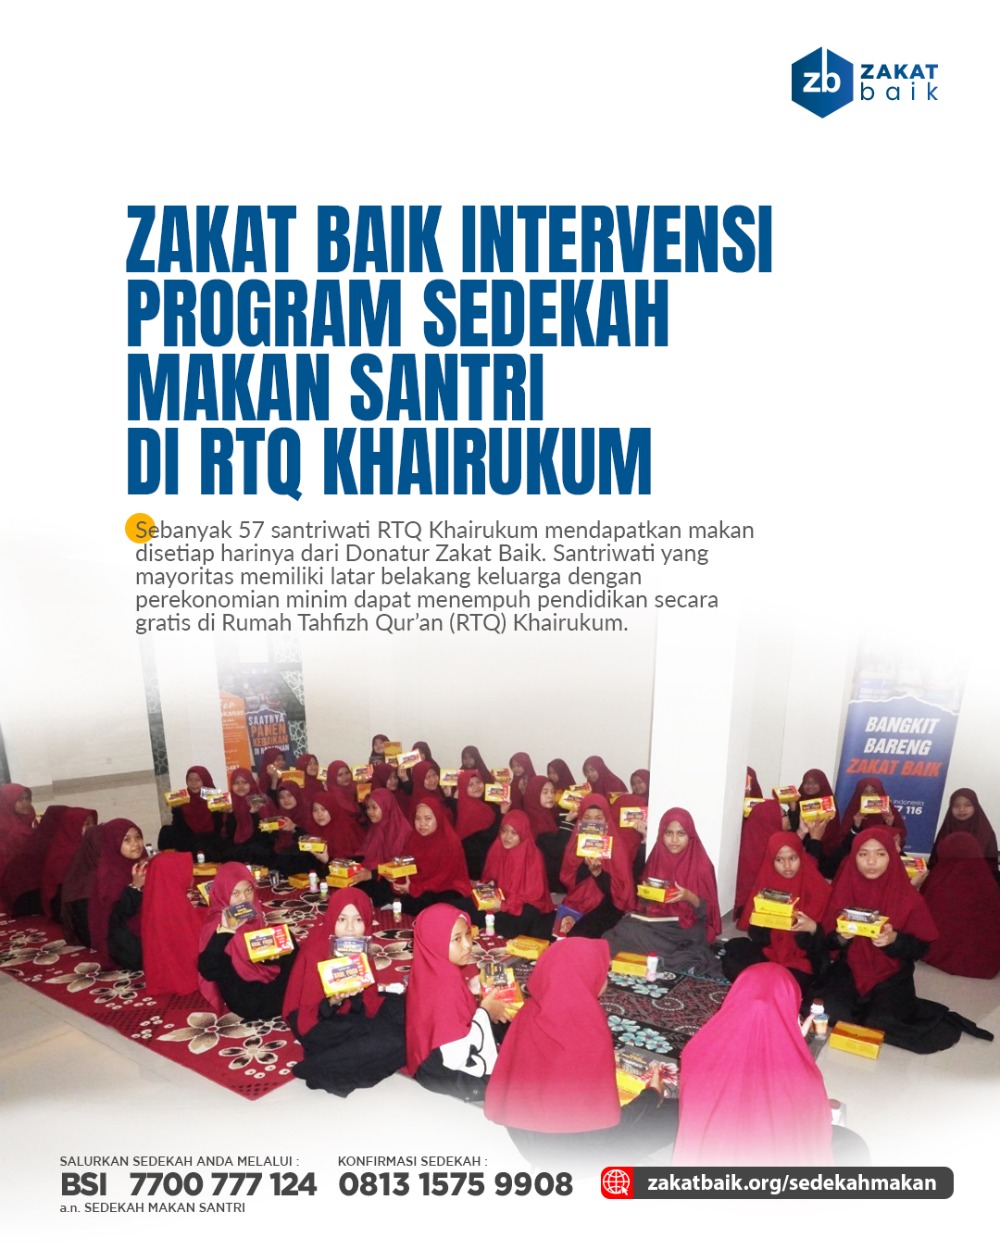 Zakat Baik intervensi program sedekah makan di Rumah Tahfidz Khairukum